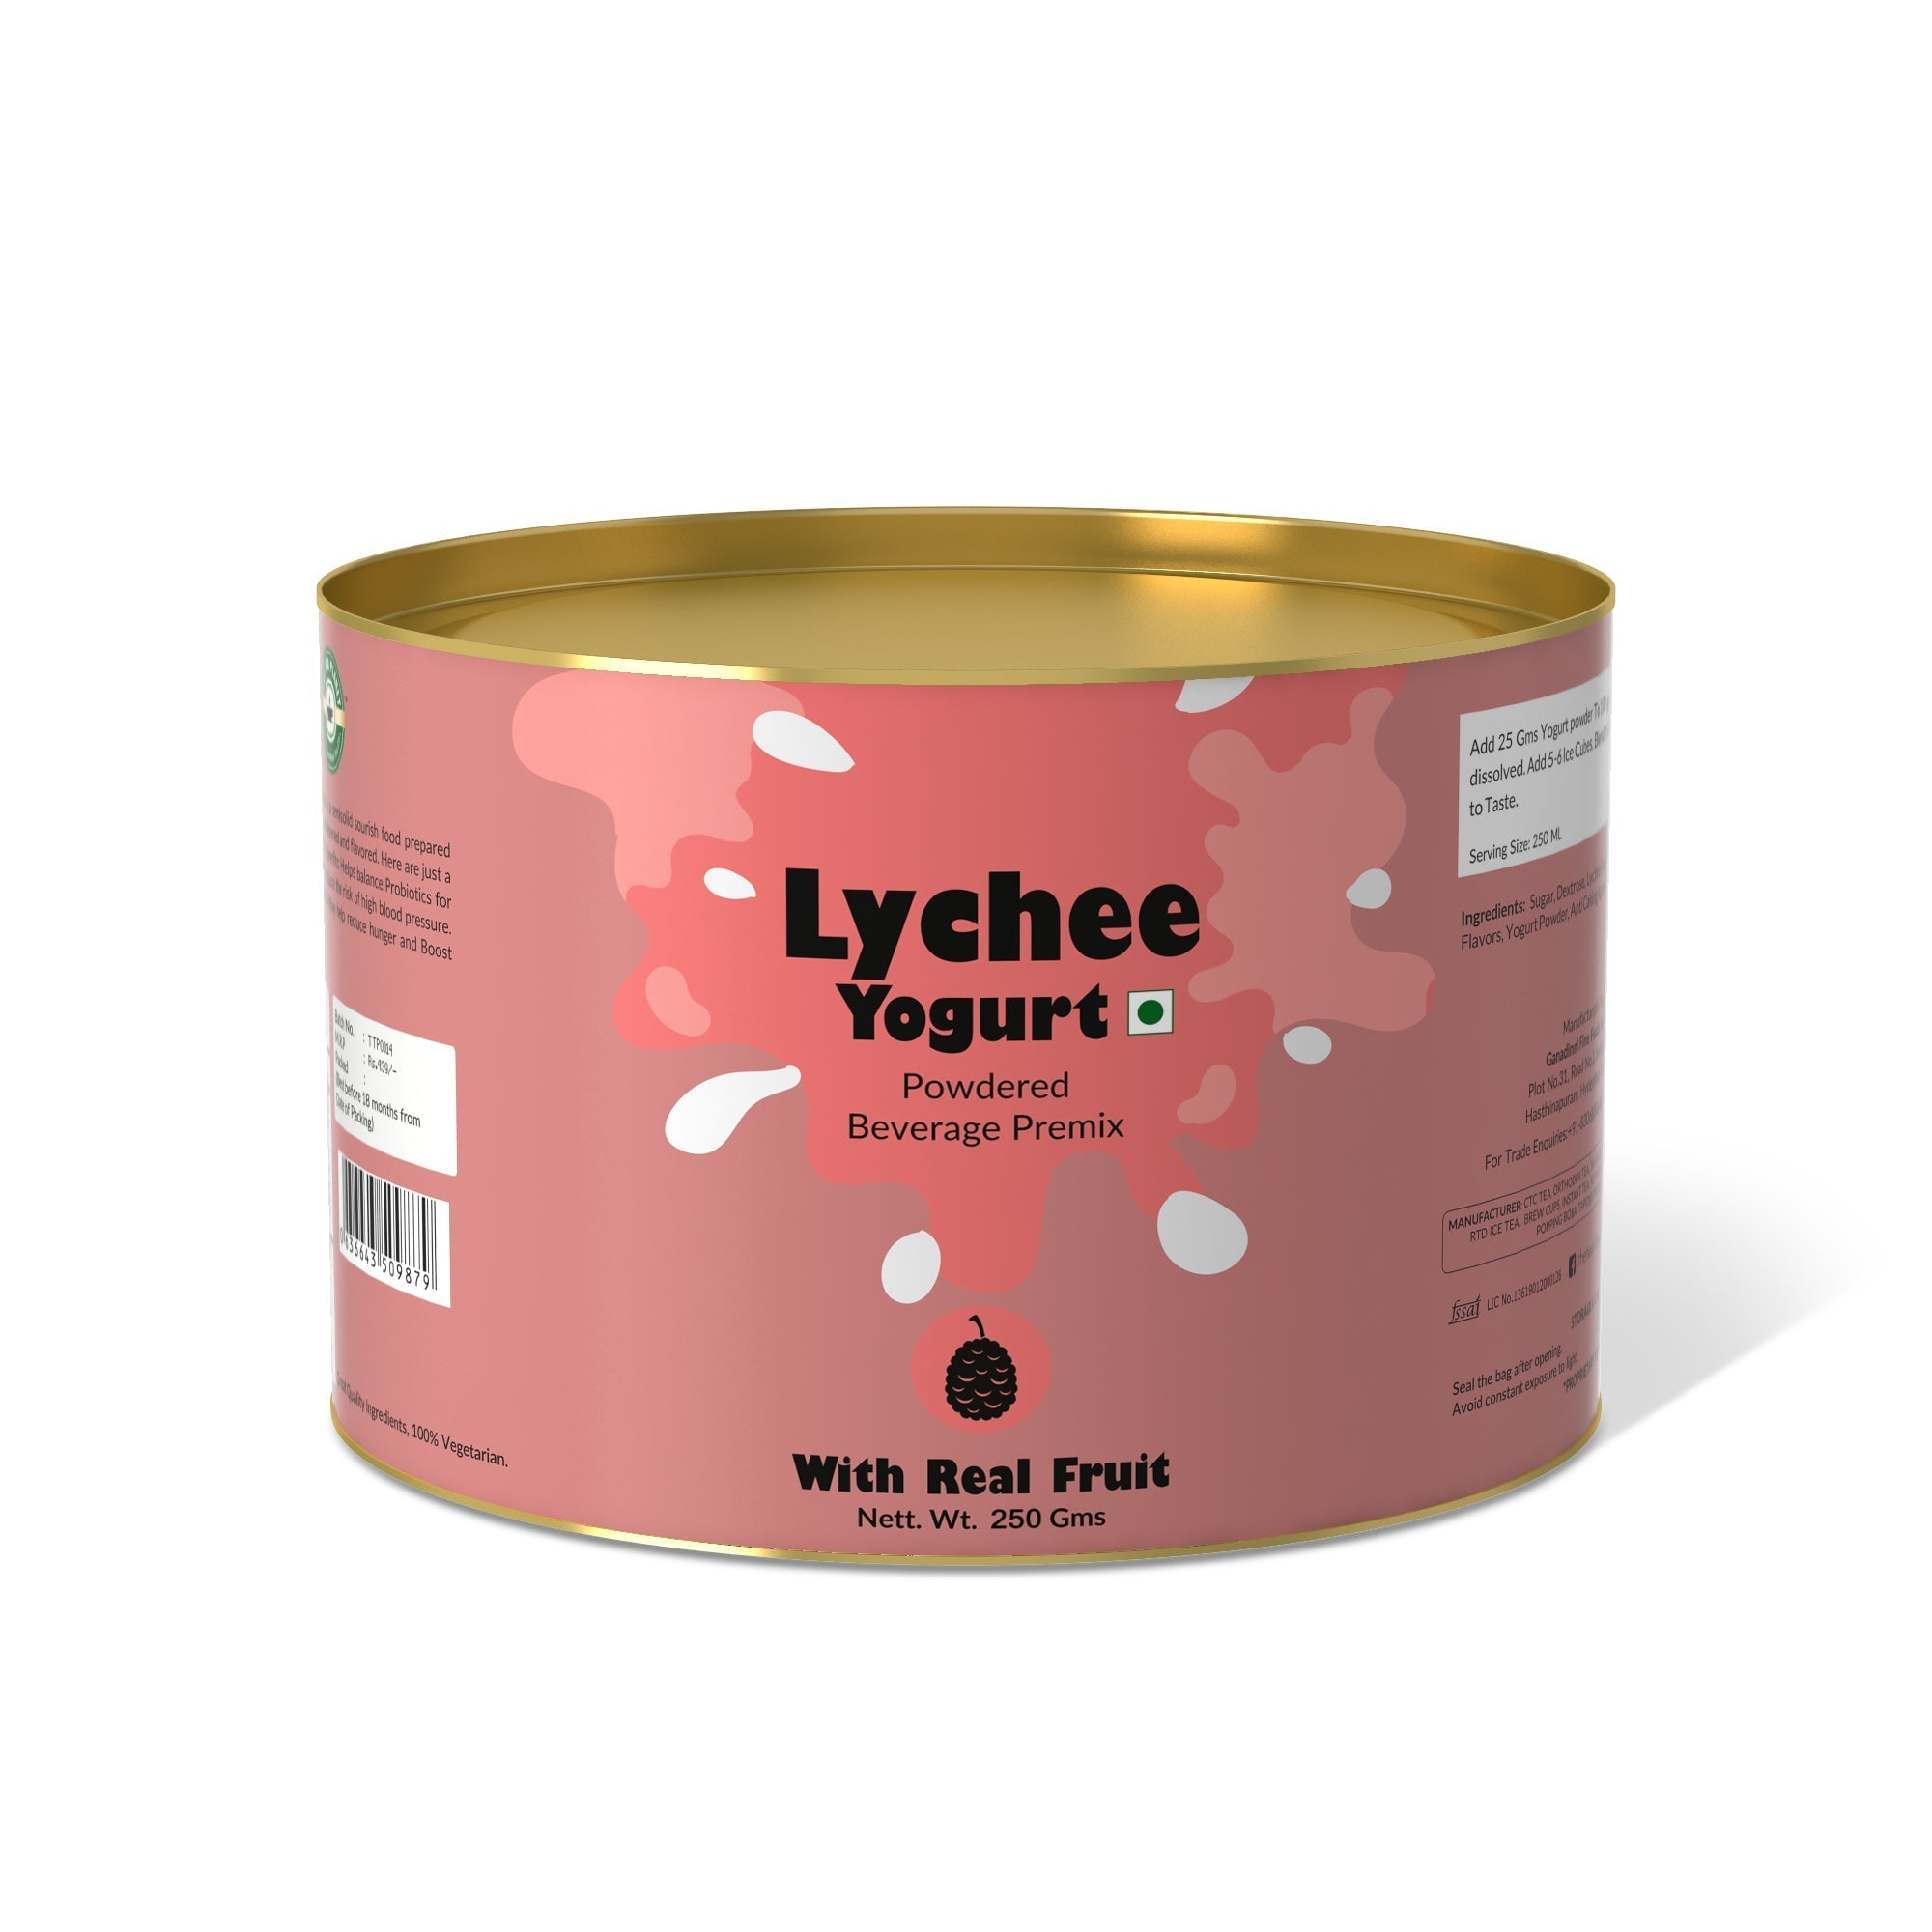 Lychee Yogurt Mix - 400 gms